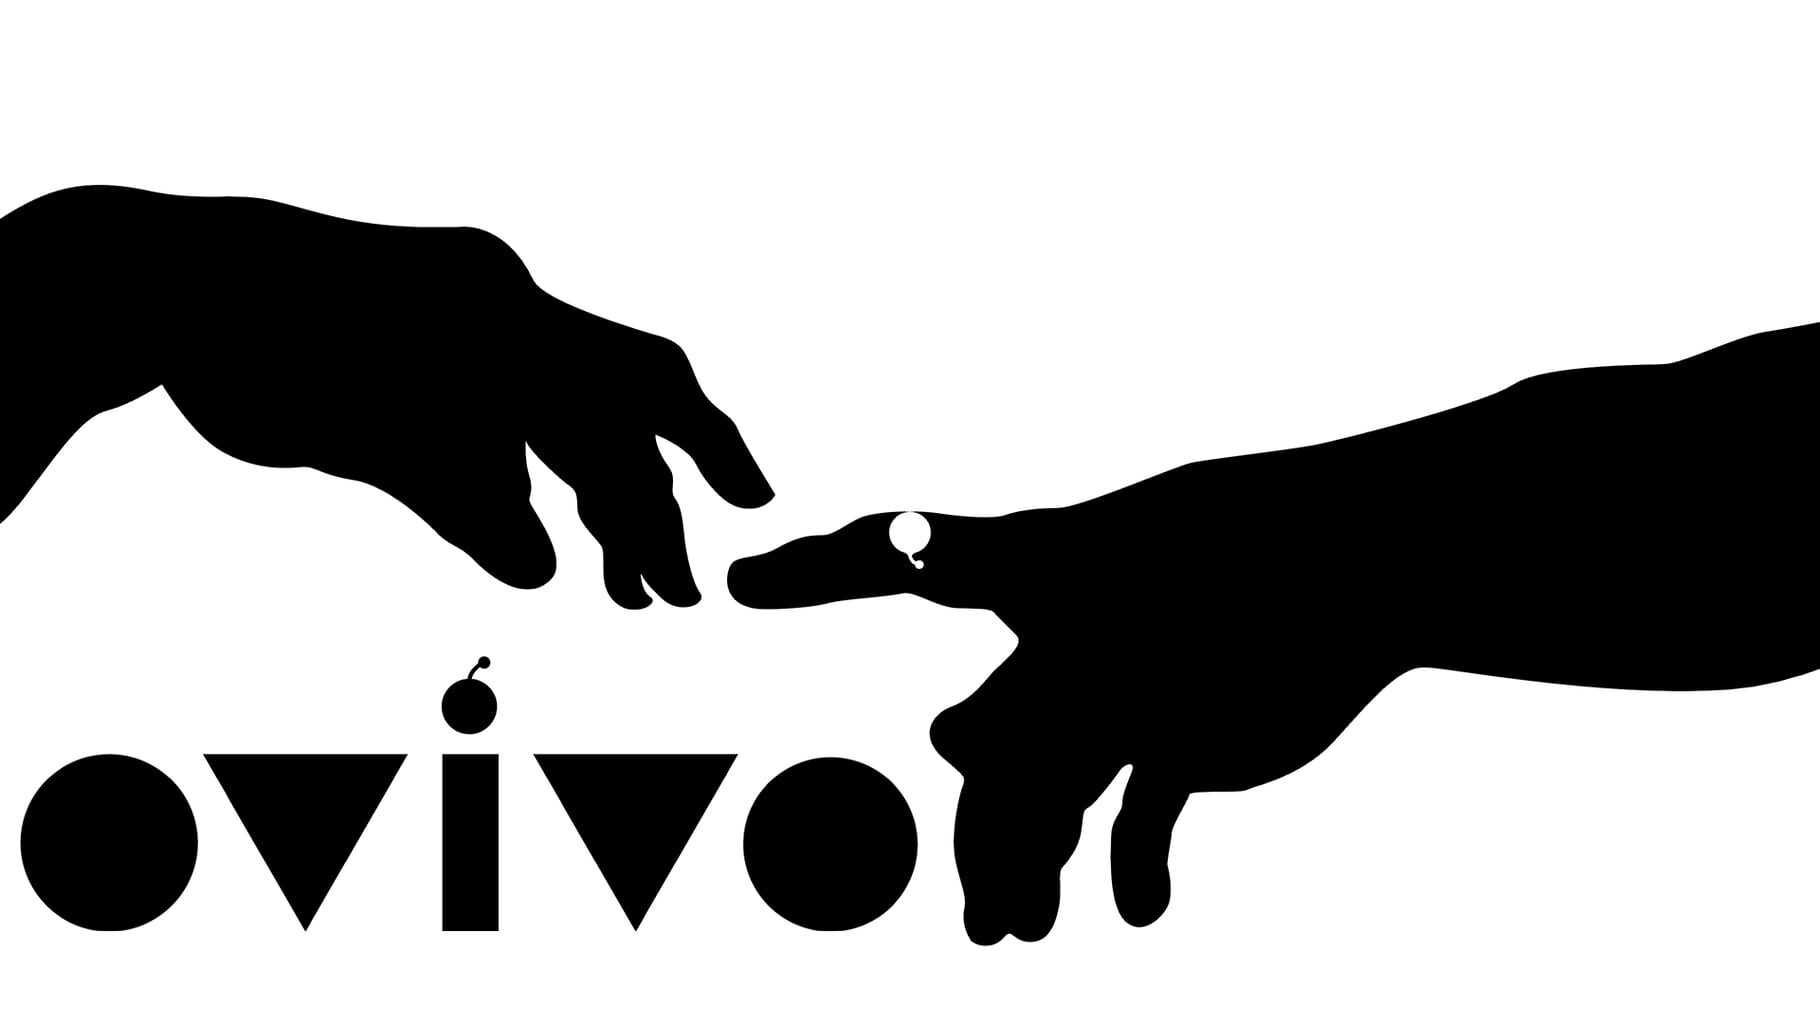 Ovivo artwork